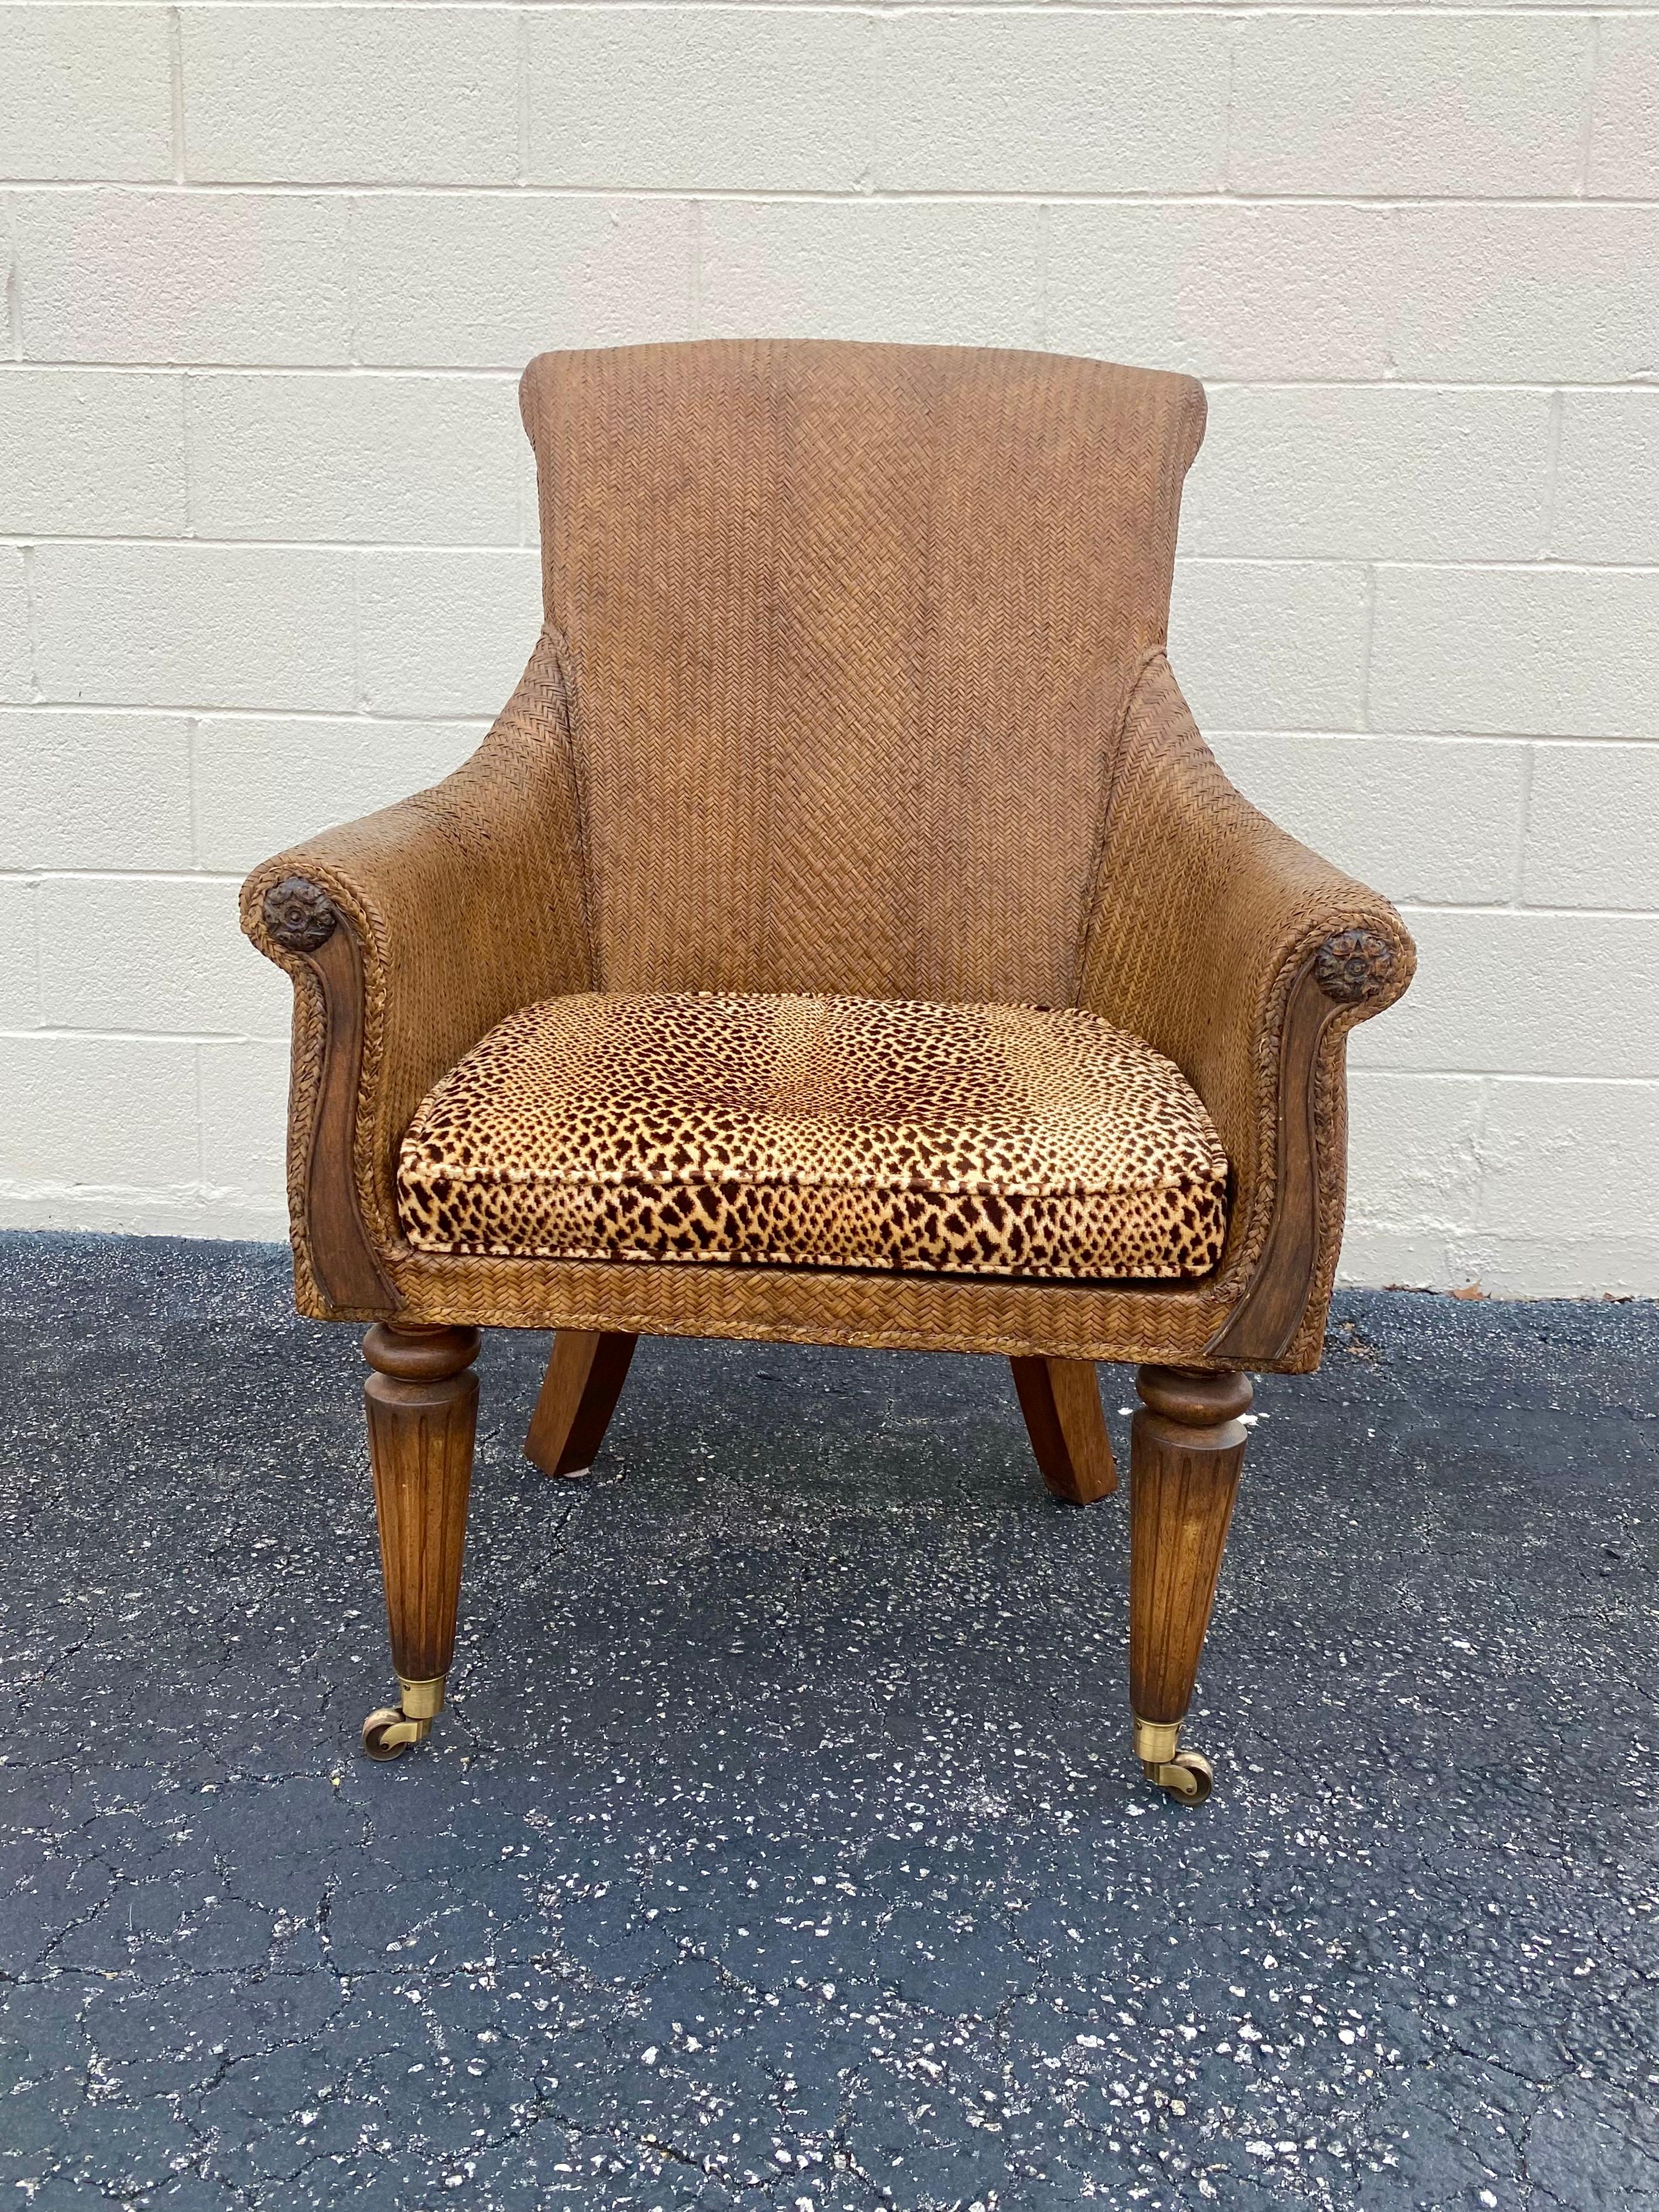 Cette magnifique chaise est une pièce d'apparat qui est également extrêmement confortable et pleine de personnalité ! Fabriqué avec du rotin et un cadre en bois. La chaise est produite individuellement et finie avec le plus haut niveau d'artisanat.